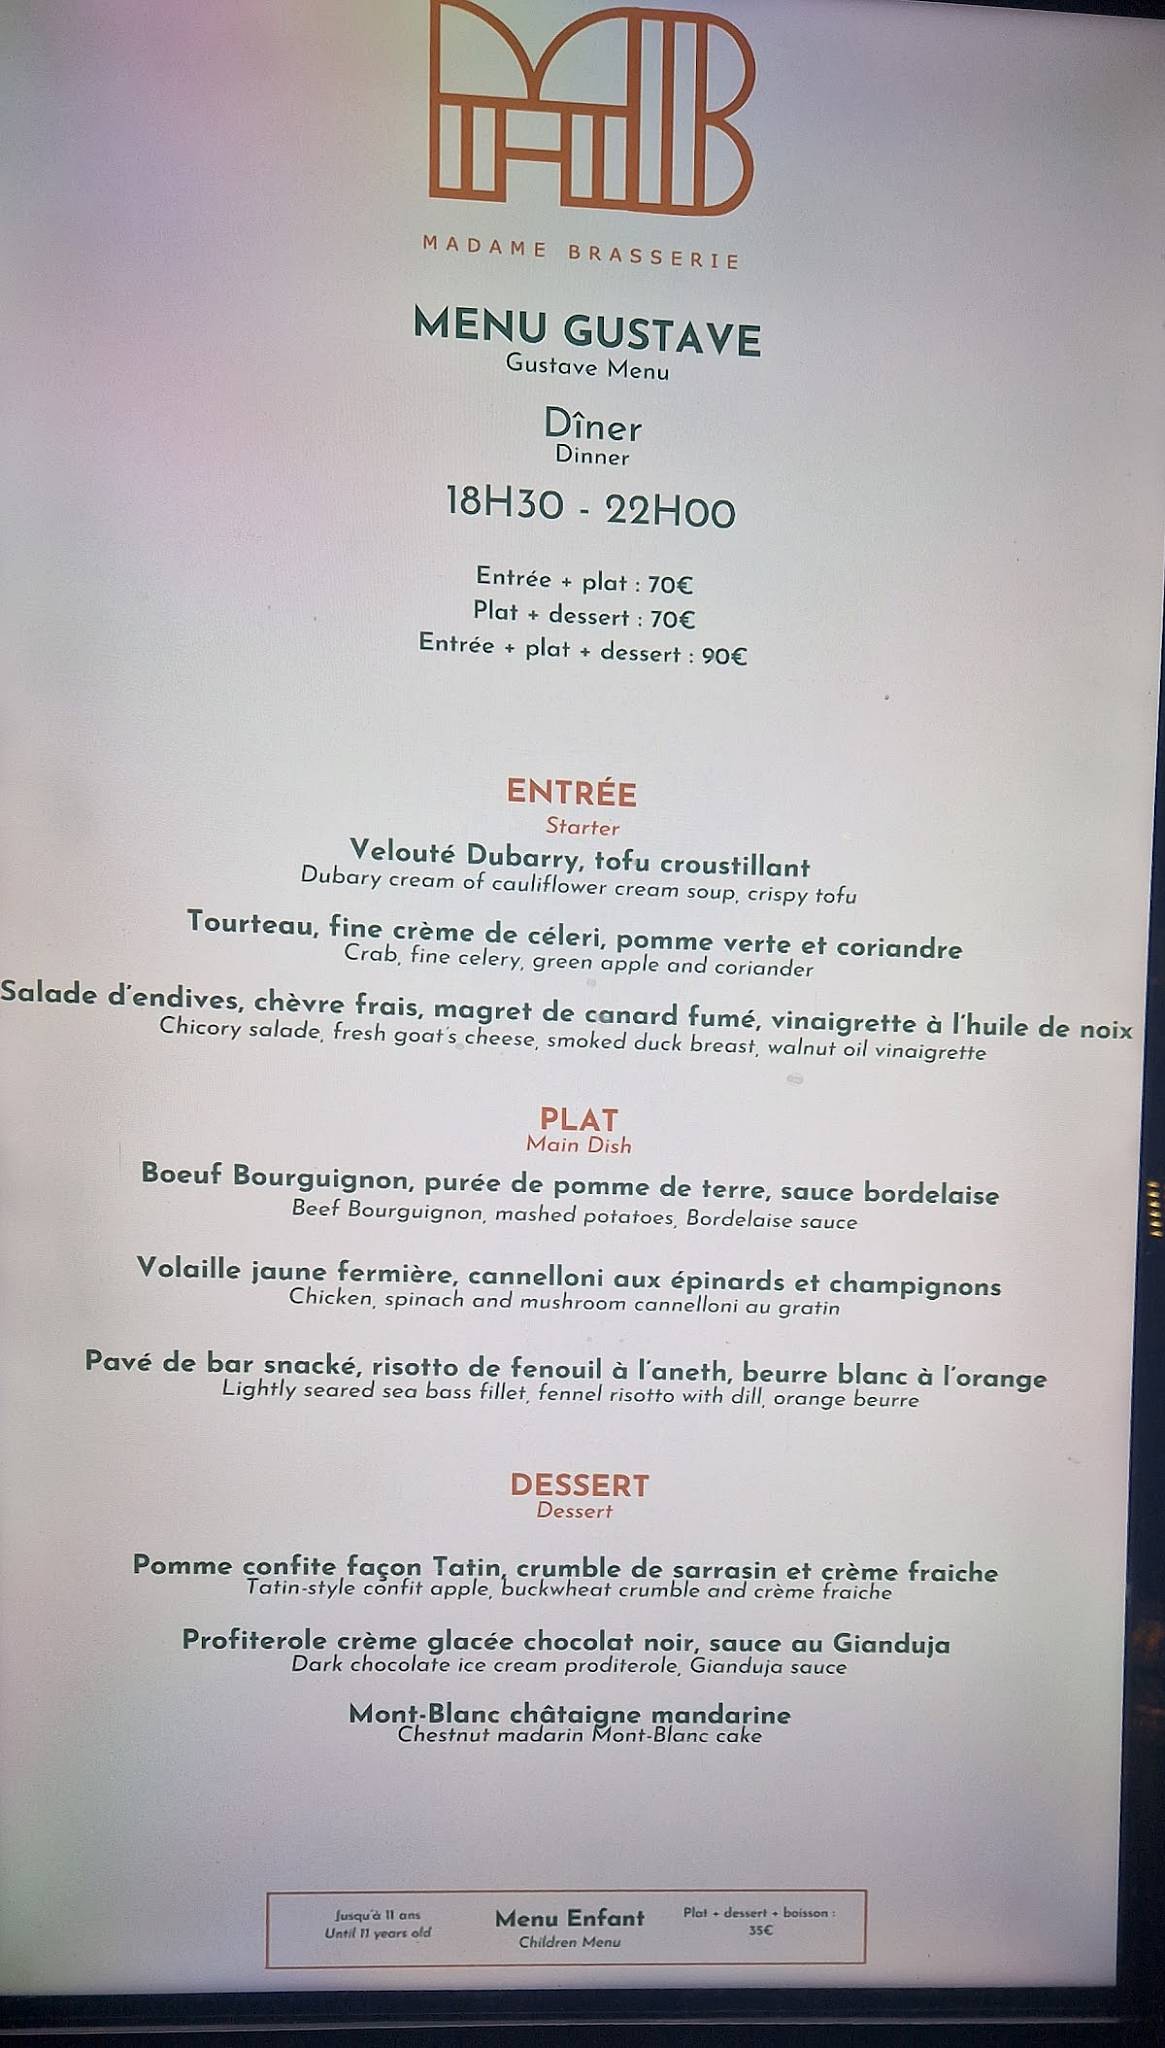 Madame Brasserie - Tour Eiffel menu